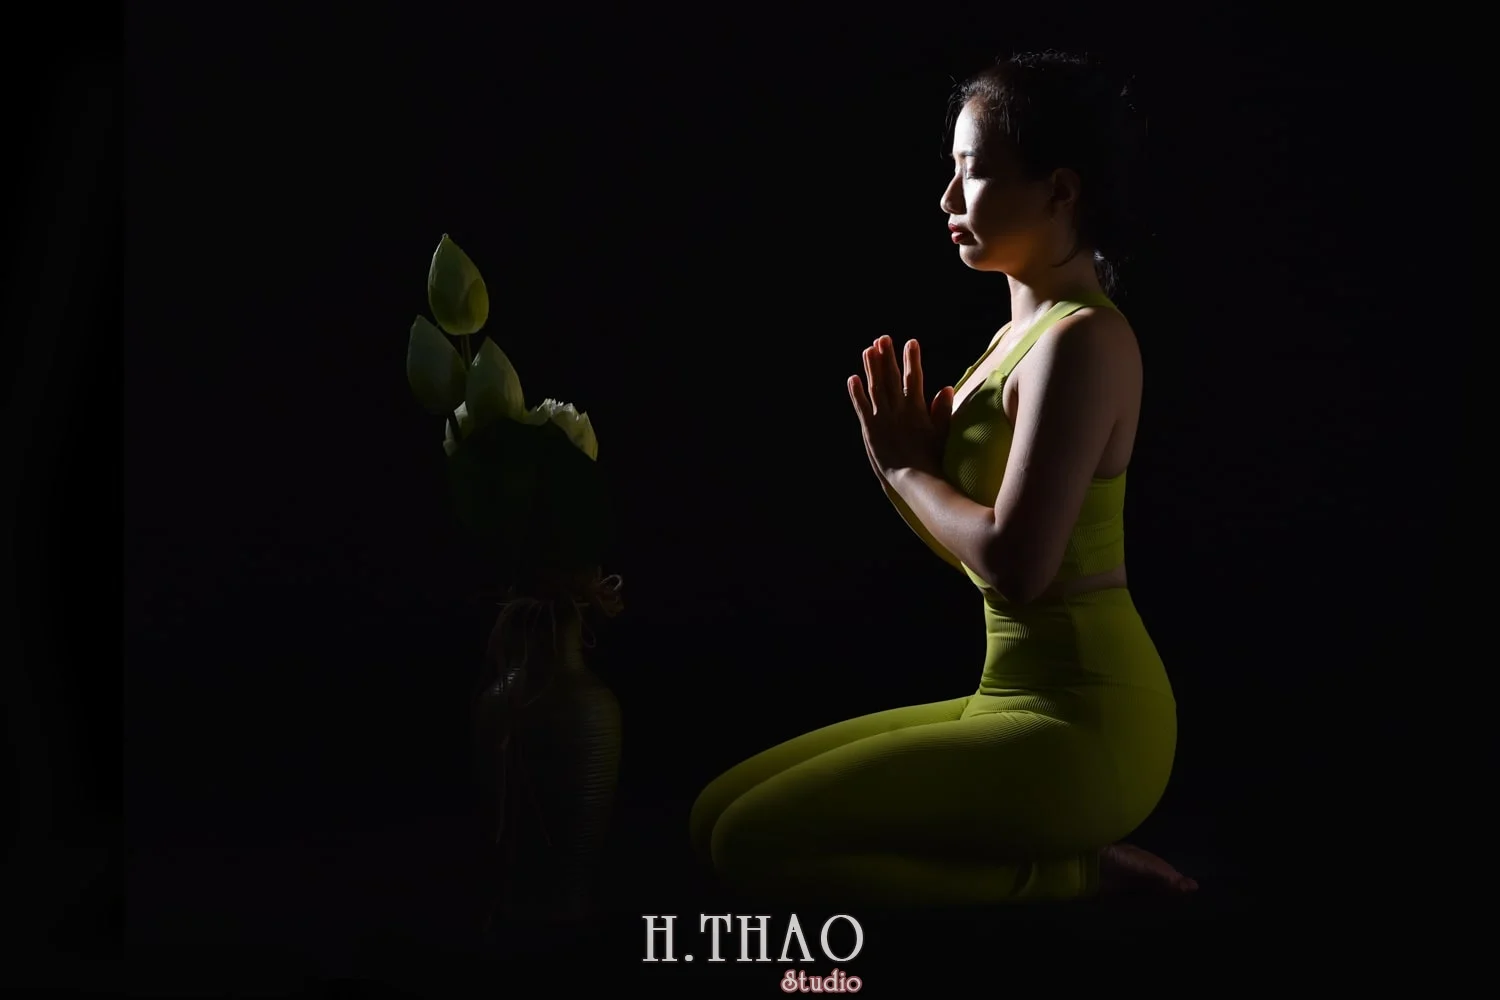 Anh yoga 19 min - Bộ ảnh Yoga chụp trong studio tuyệt đẹp – HThao Studio